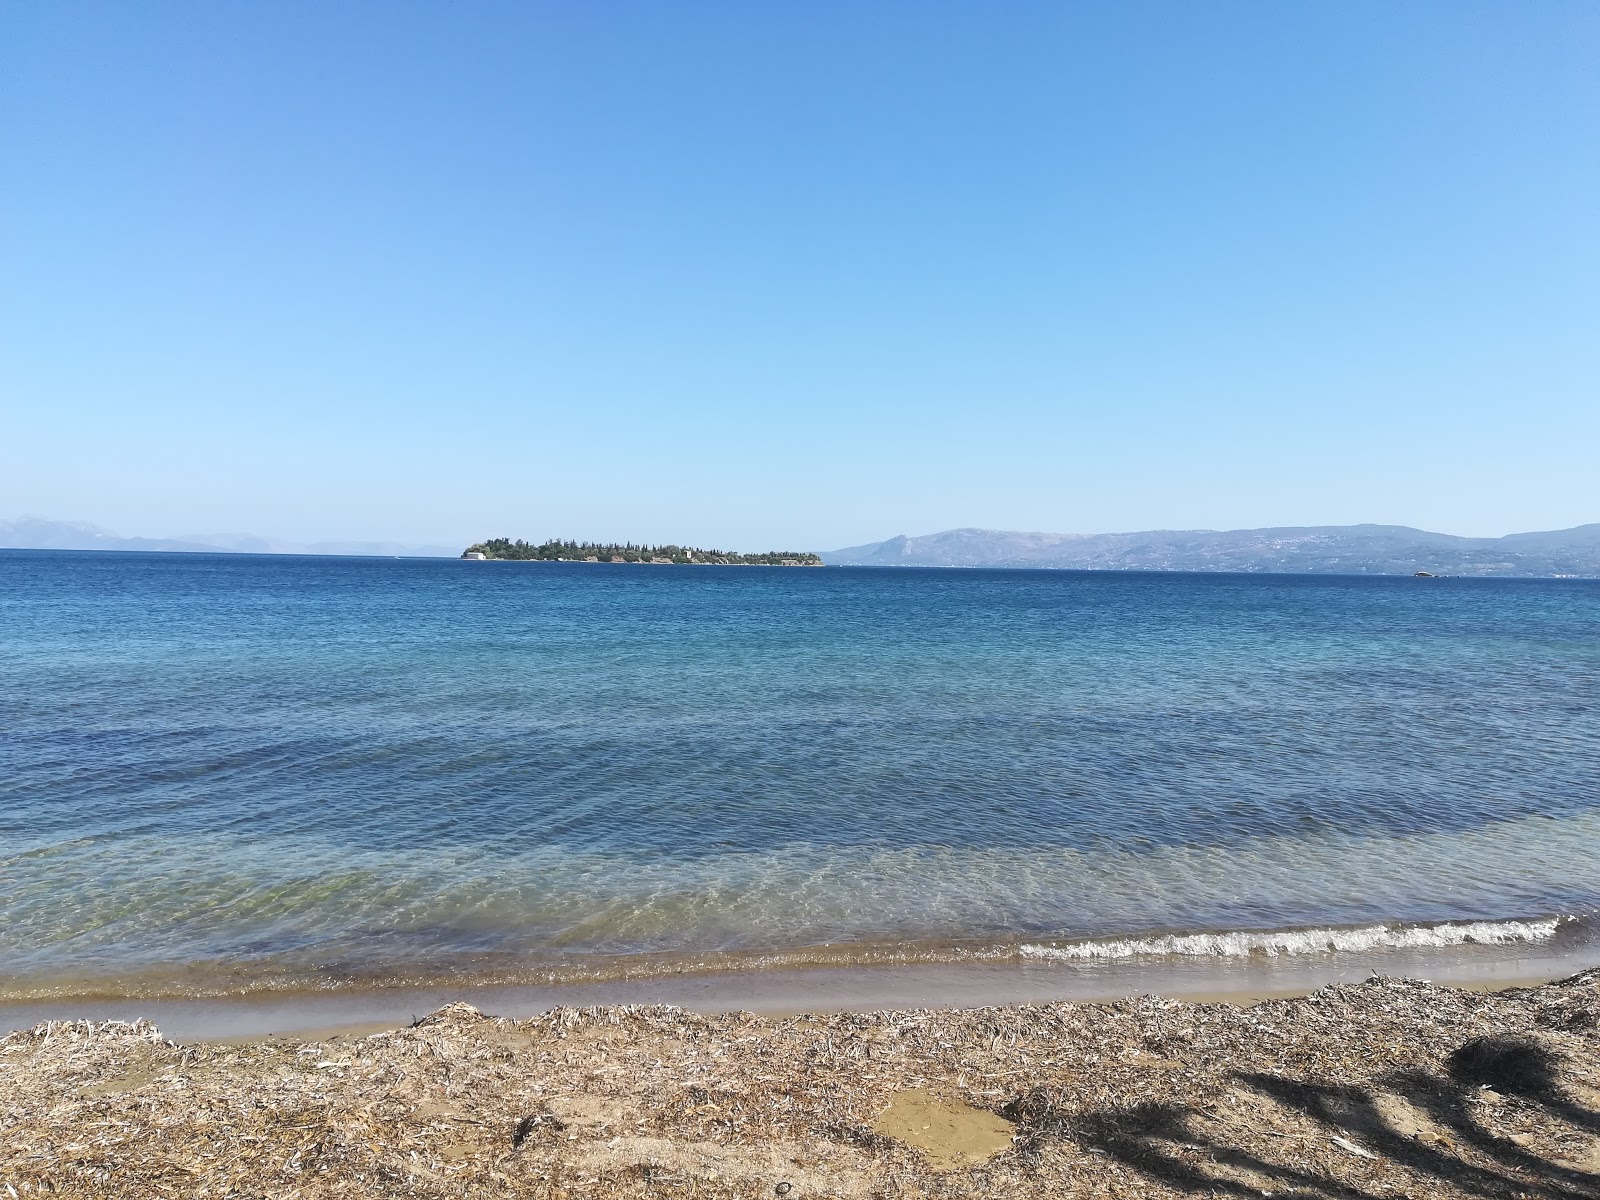 Eviana beach'in fotoğrafı açık yeşil su yüzey ile